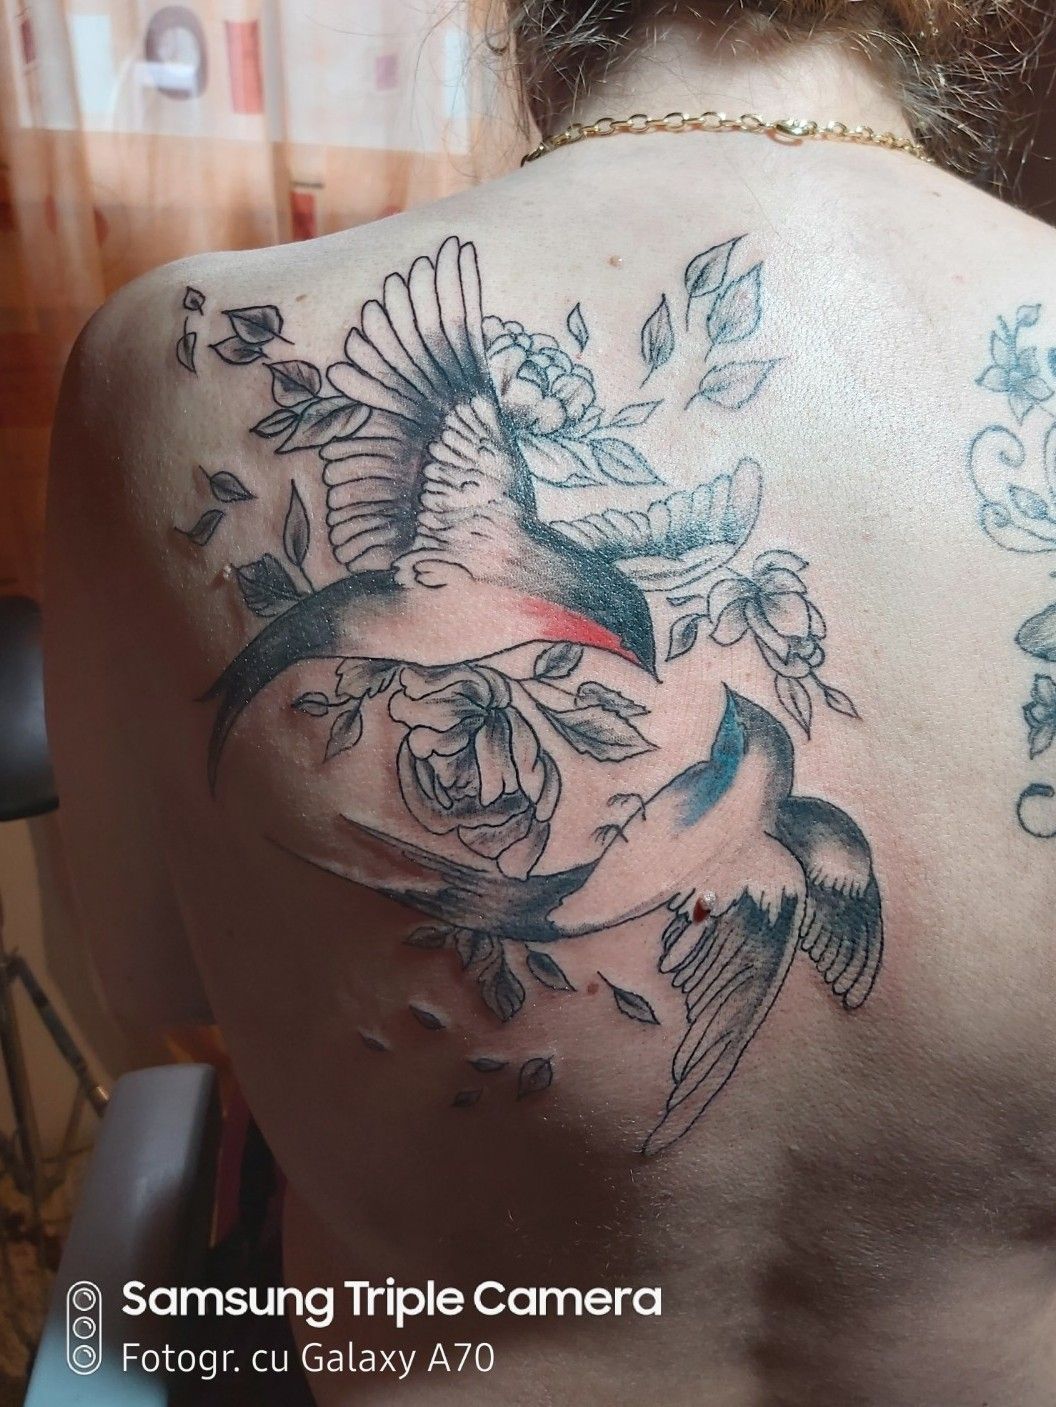 Discover 92 about joseph morgan tattoo super cool  indaotaonec